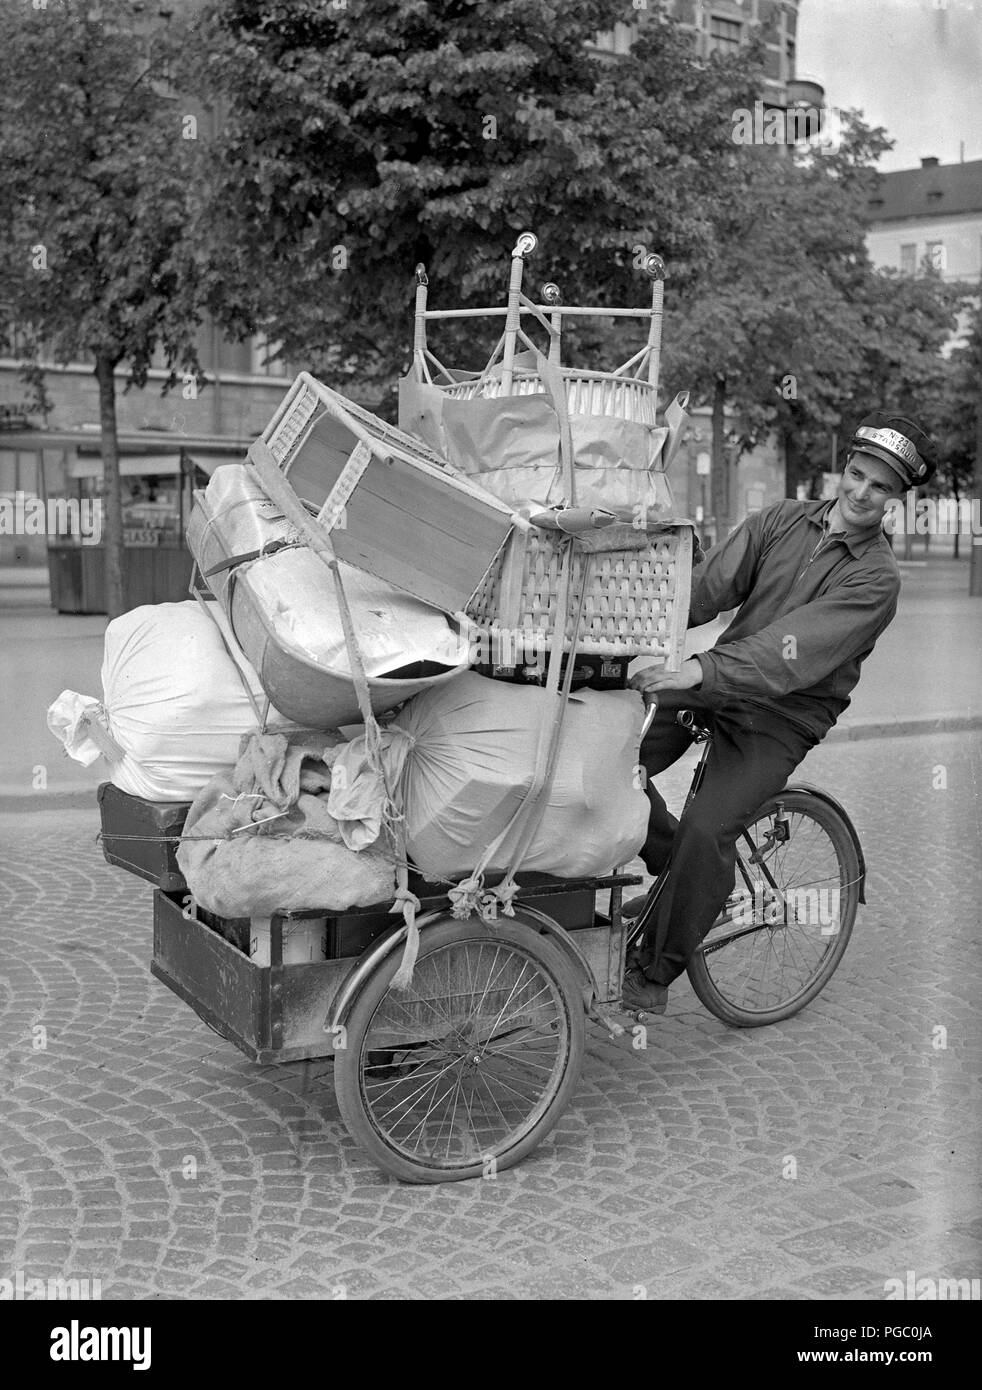 1940 Transport. Un jeune homme qui travaille comme un vélo messanger et le transport des marchandises dans la ville de Stockholm avec ses vélos de transport. Juin 1940. 146-7 Kristoffersson Photo Banque D'Images